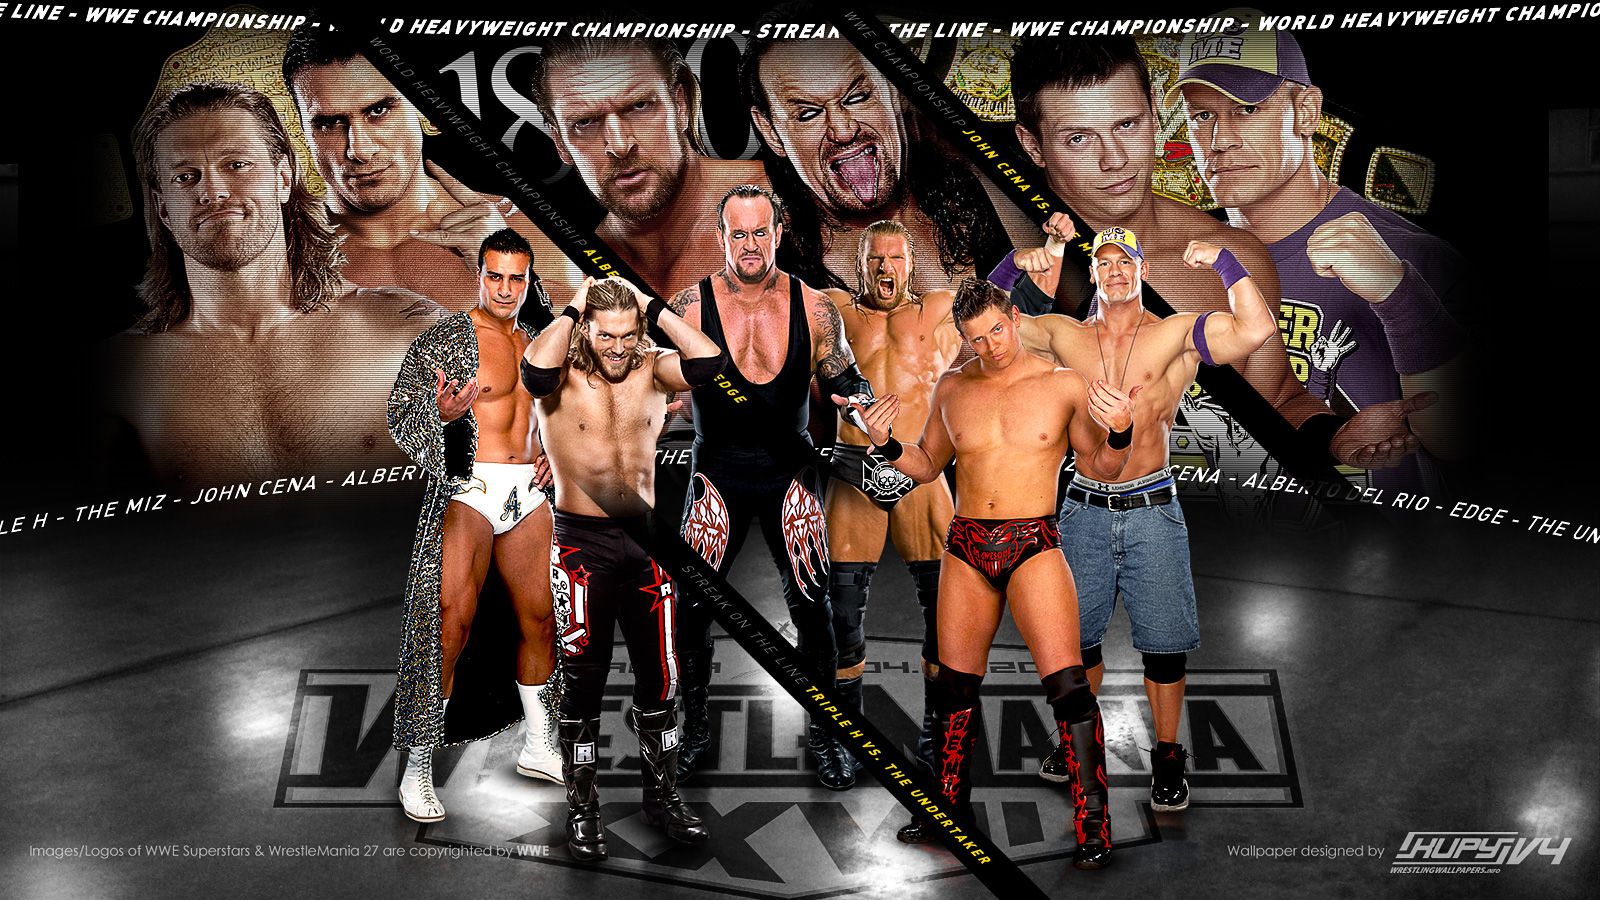 WWE WALLPAPERS: Wrestlemania. Wrestle mania results. wwe. wwe.com. wwe wrestlemania. Wrestlemania 28. wwe raw. wwe wrestling. smackdown. wwe shop. wwe smackdown. wwe superstas